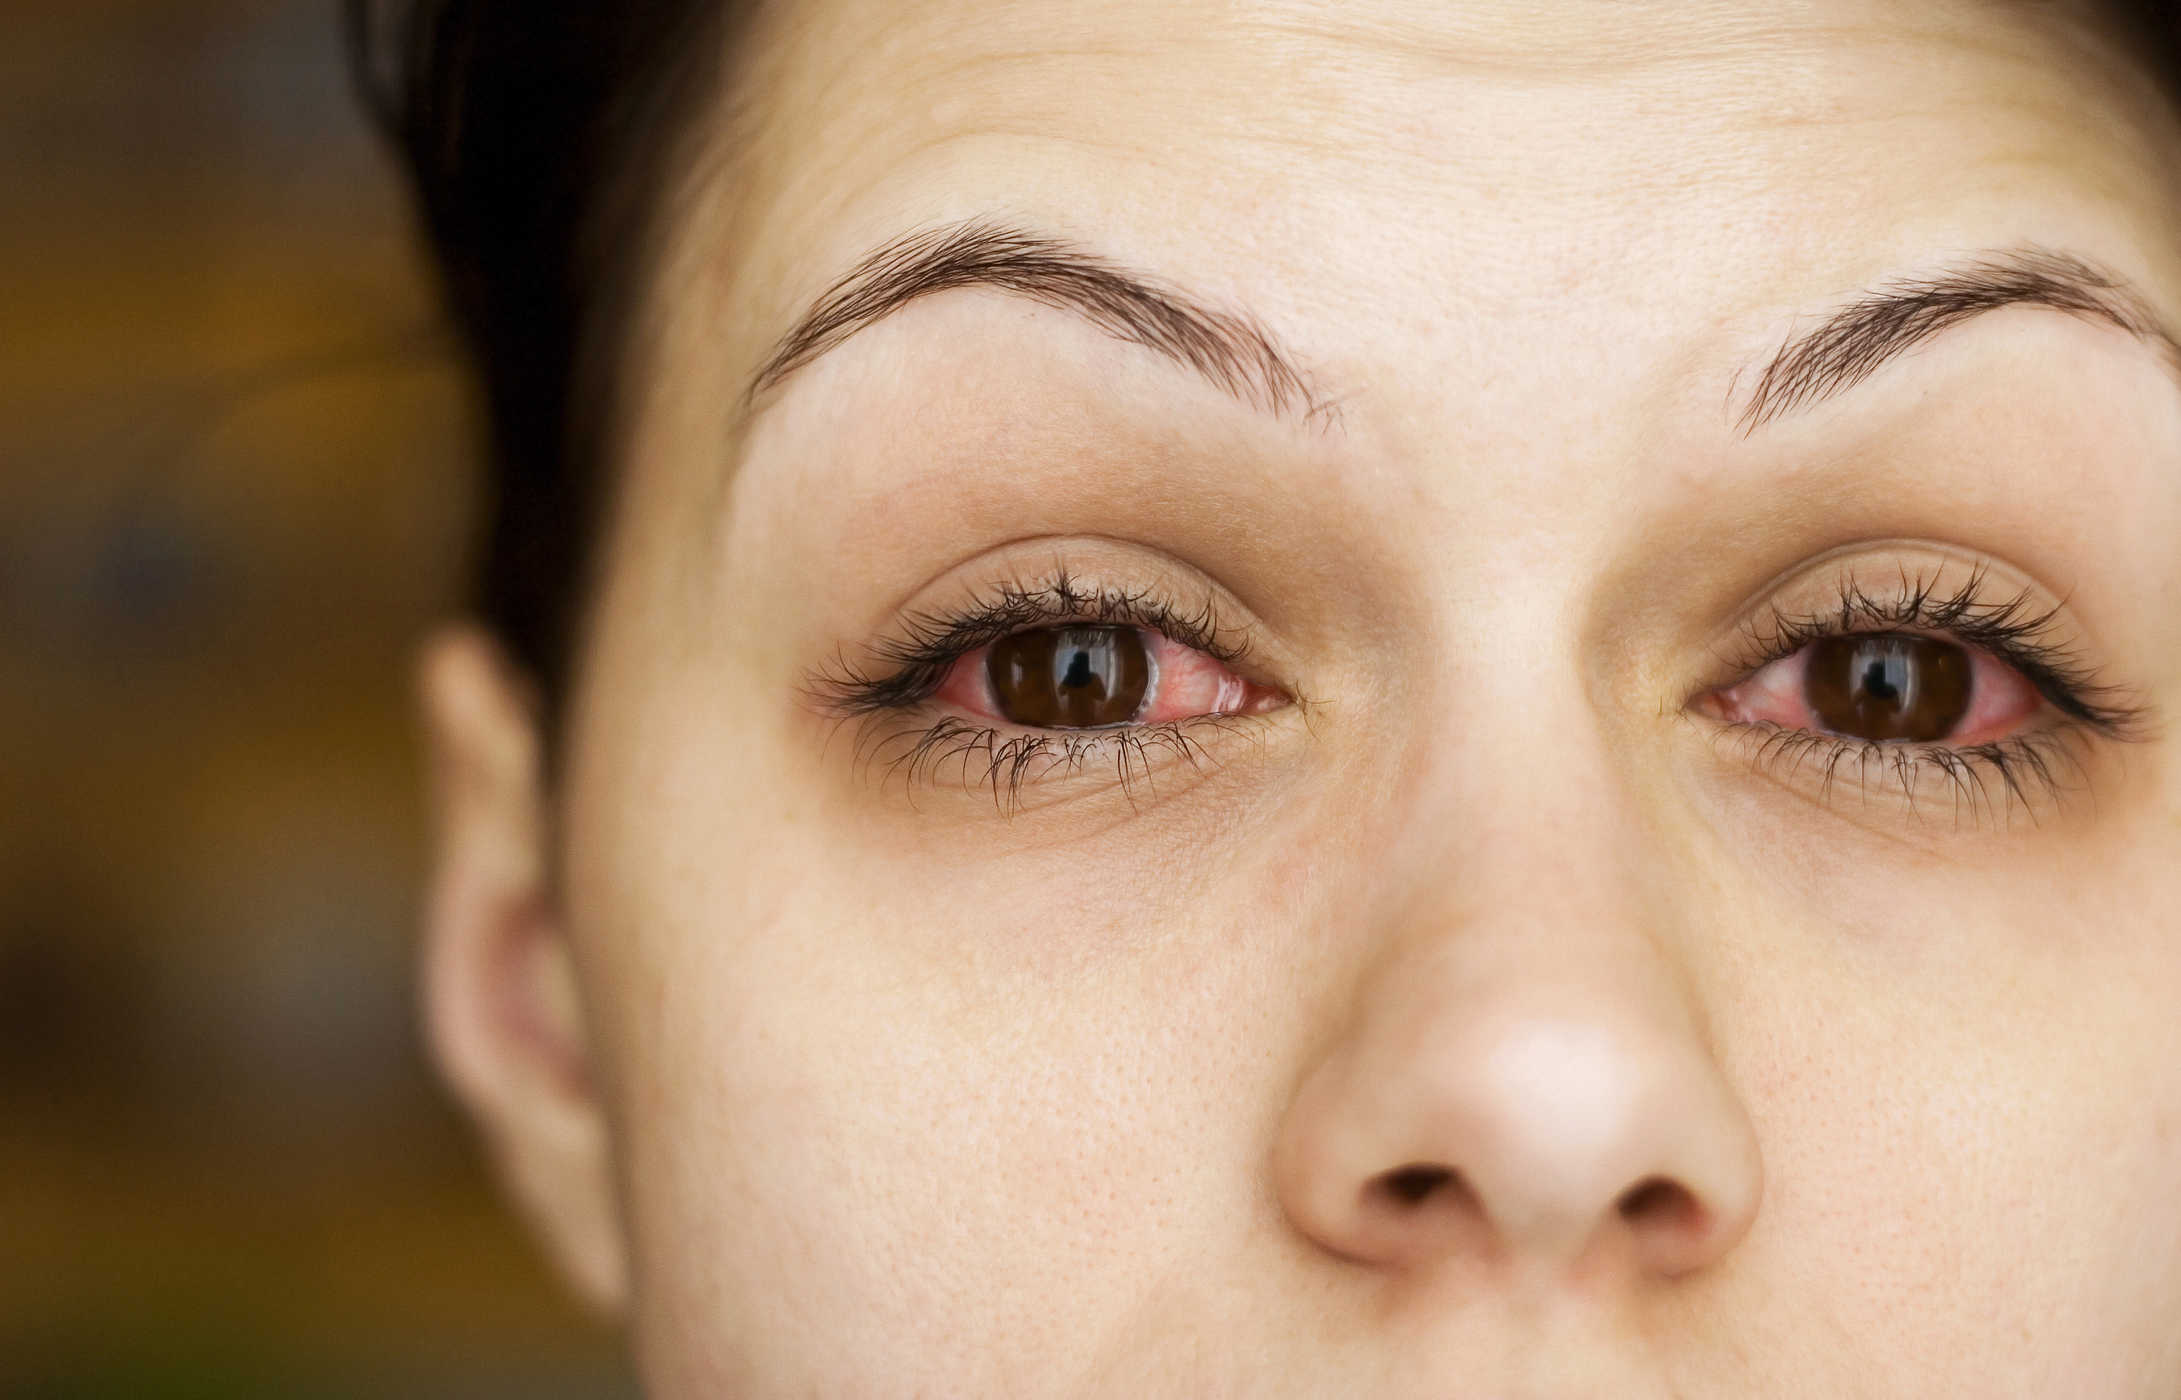 콘택트 렌즈 사용으로 인한 눈 감염 인식